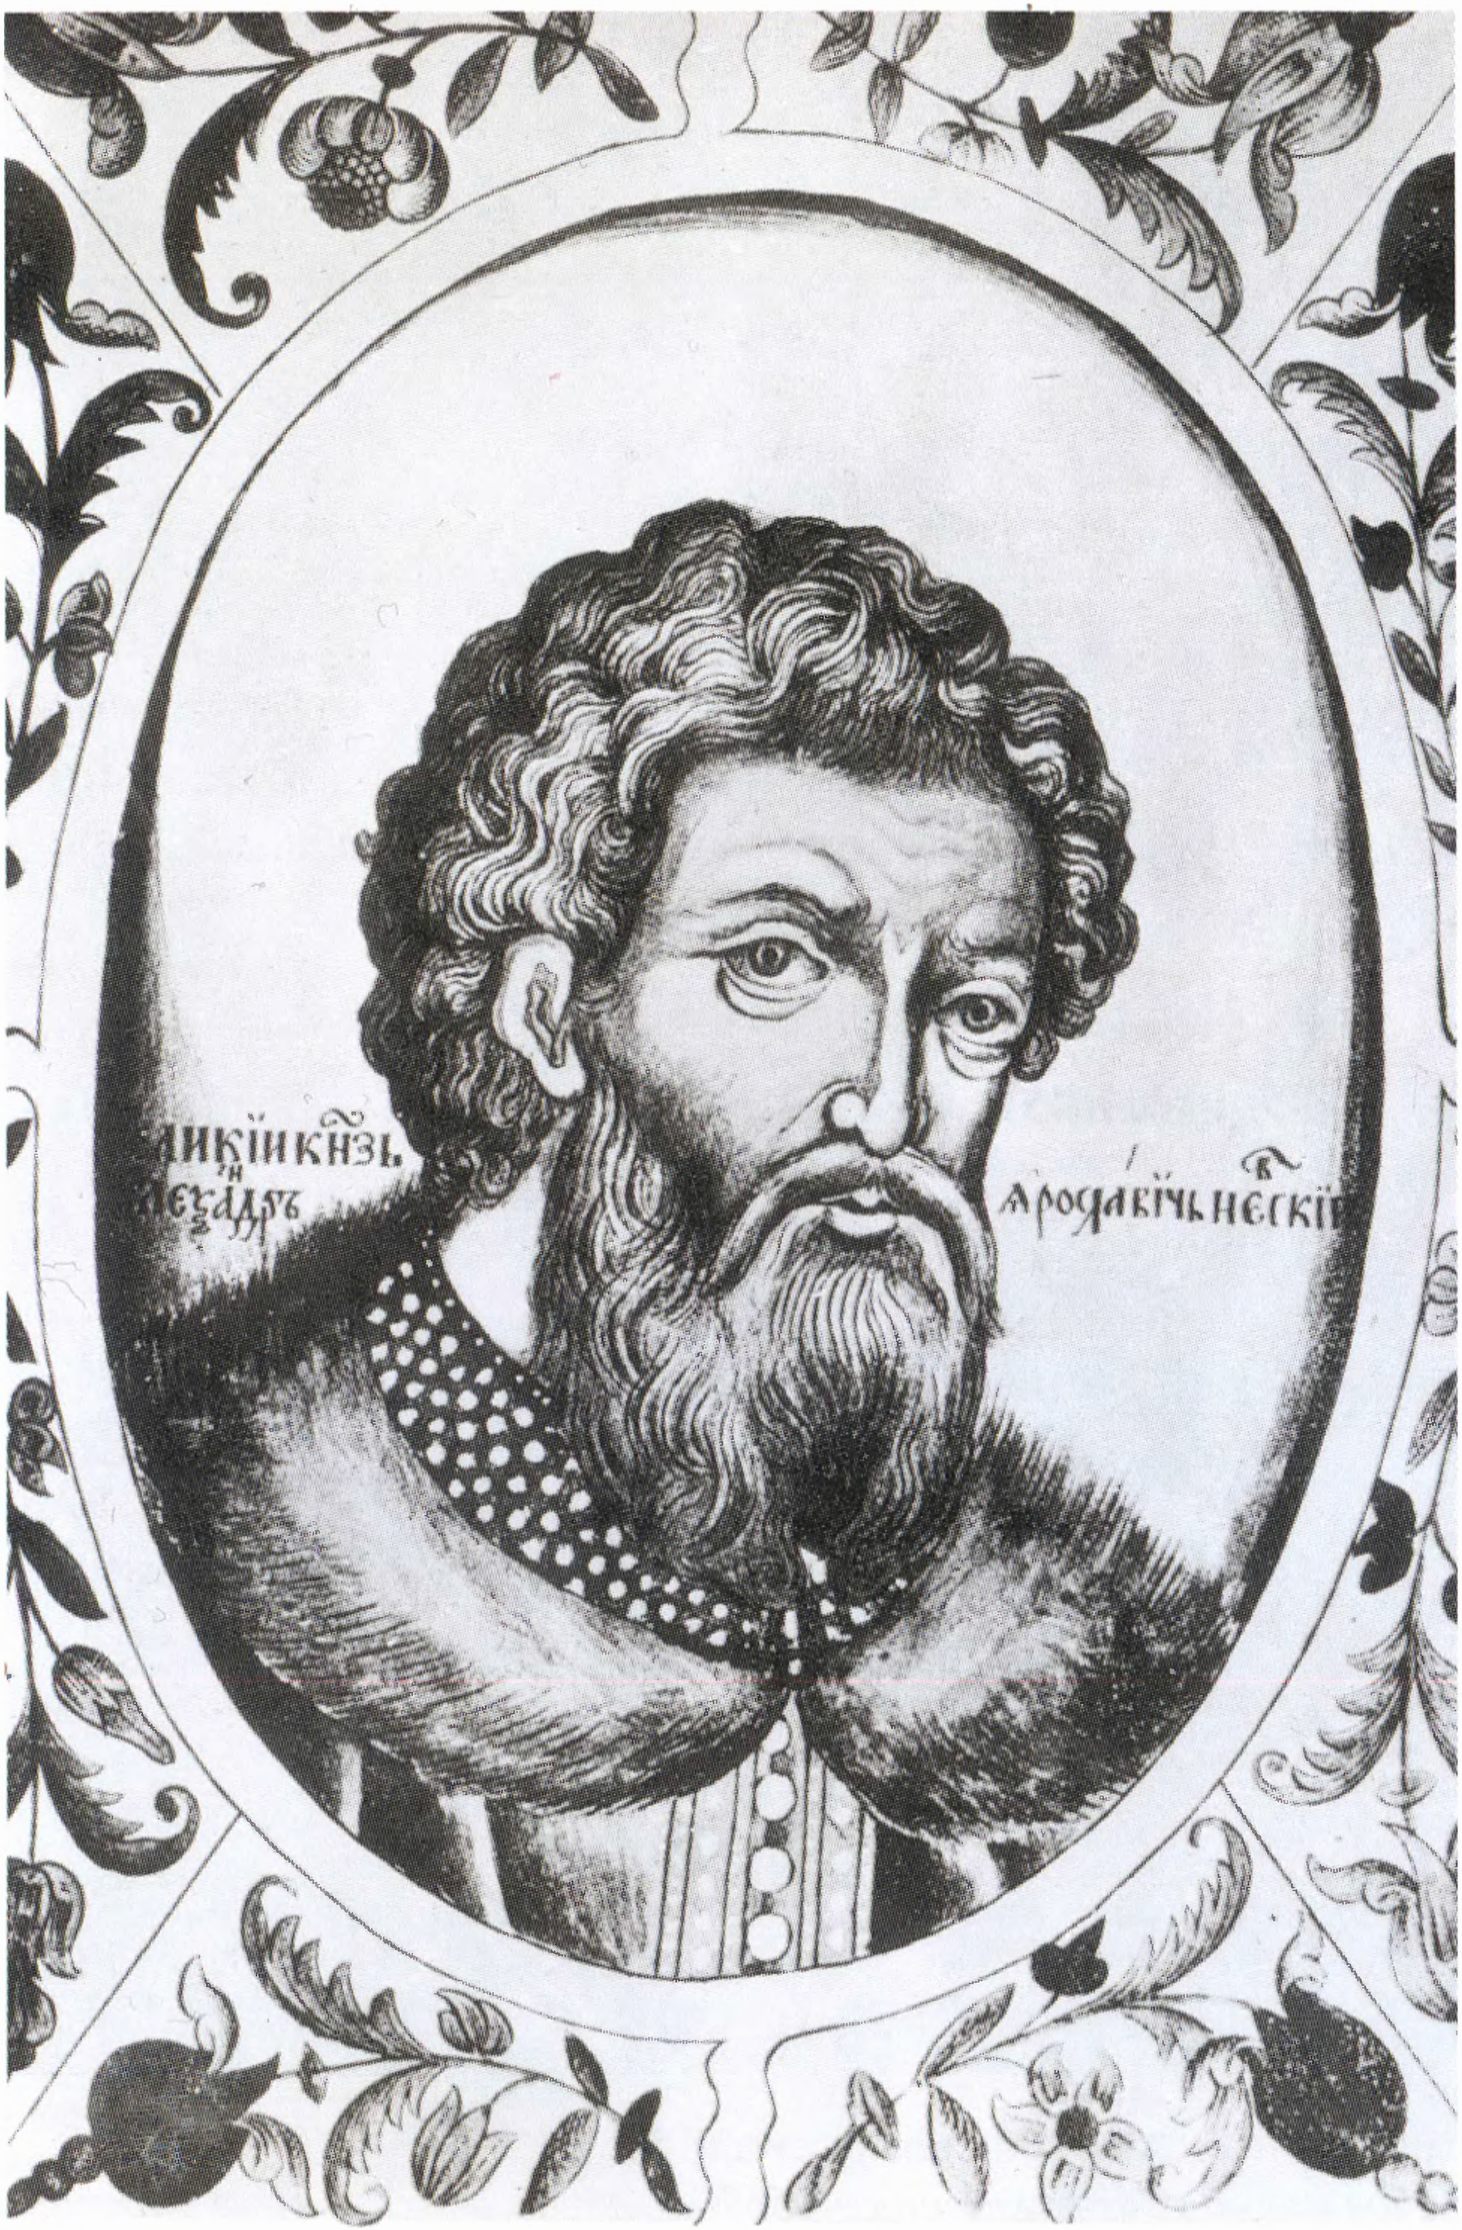 Великий князь Александр Ярославич Невский. Портрет из «Титулярника» 1672 г